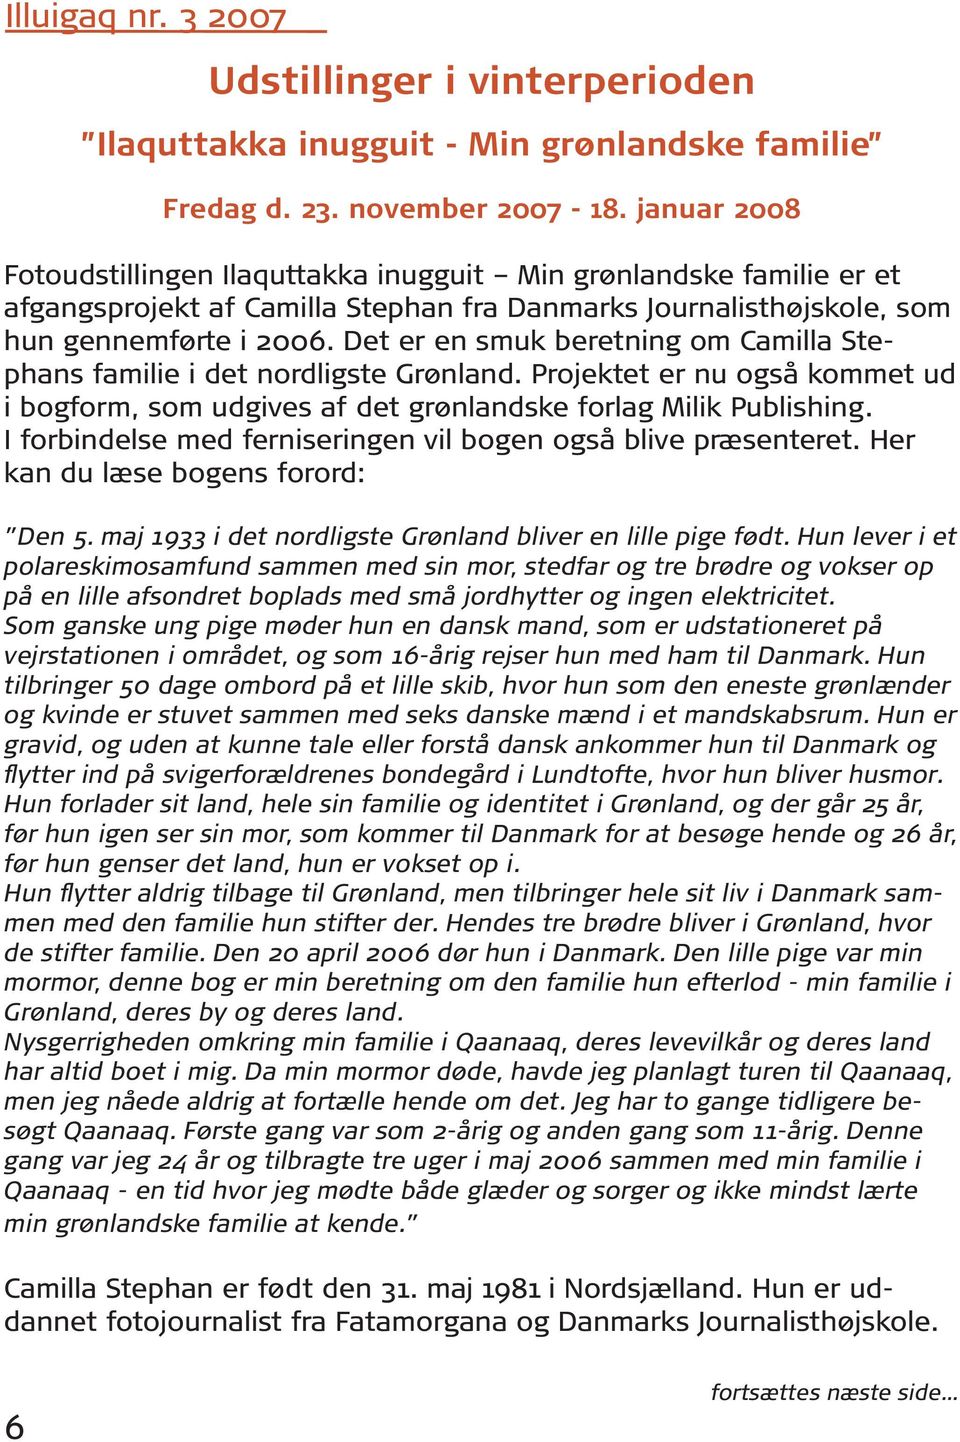 Det er en smuk beretning om Camilla Stephans familie i det nordligste Grønland. Projektet er nu også kommet ud i bogform, som udgives af det grønlandske forlag Milik Publishing.